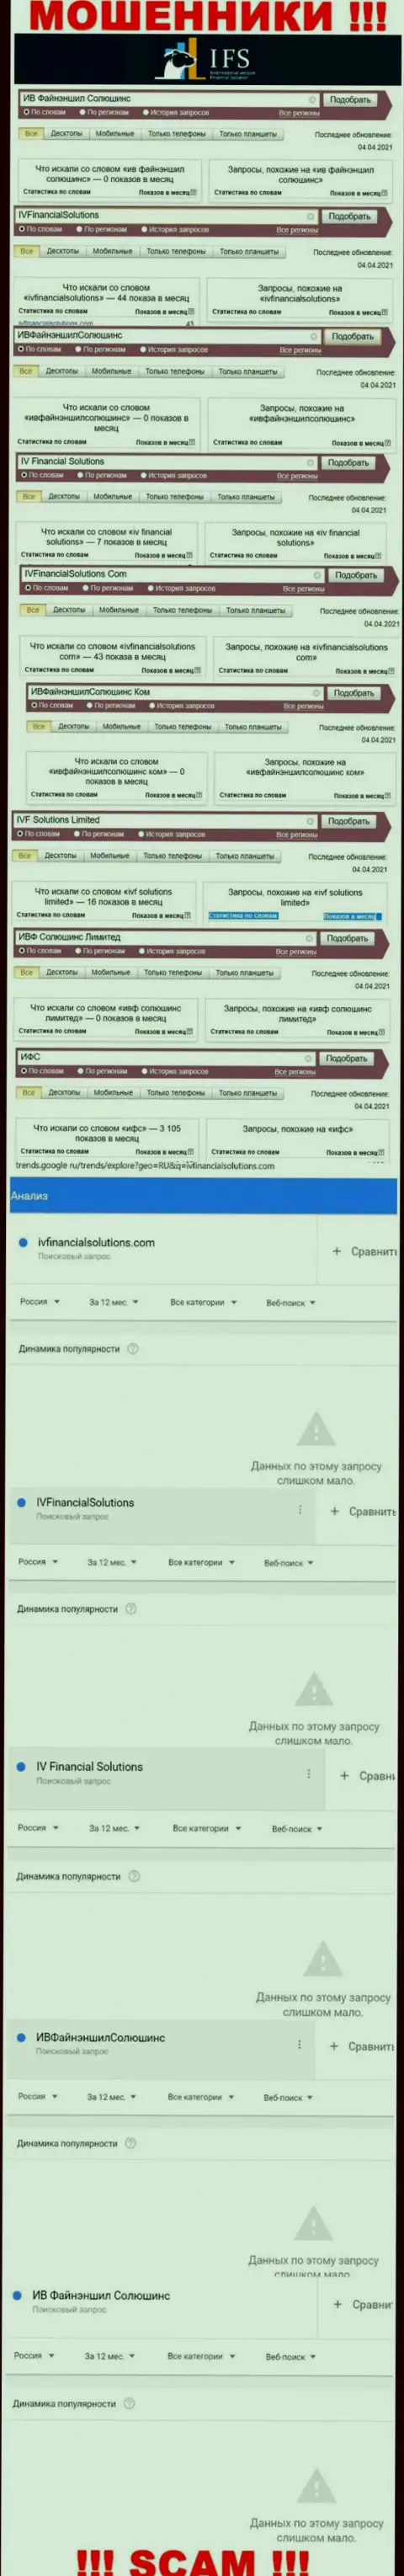 Инфа по онлайн запросам во всемирной сети интернет инфы об мошенниках ИВ Файнэншил Солюшинс